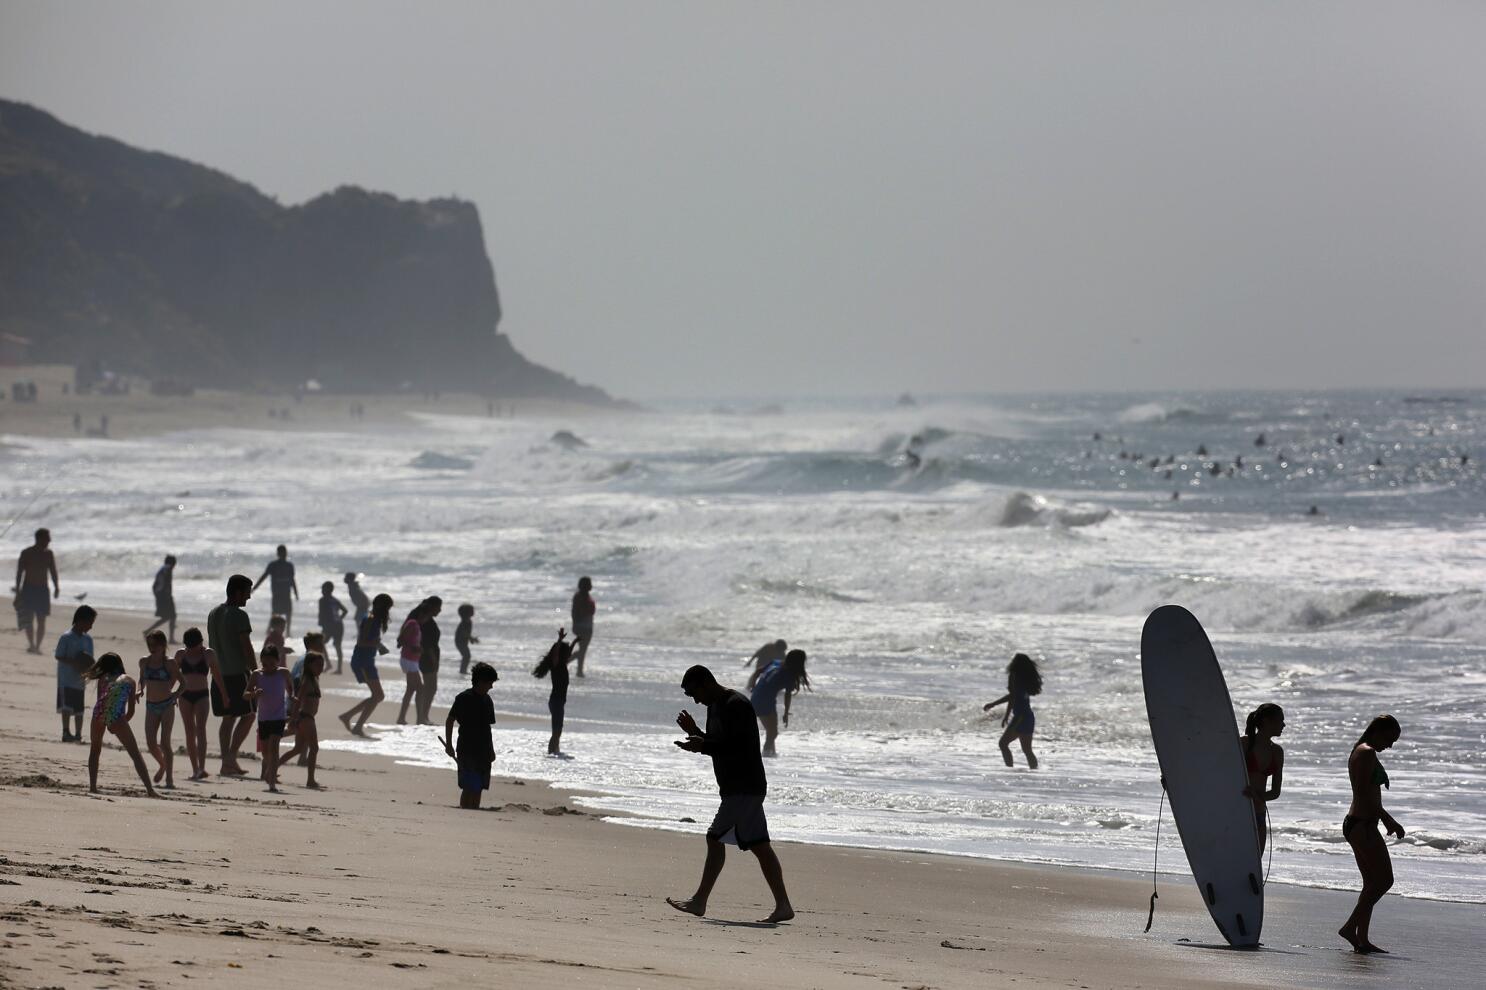 Man found dead in Zuma Beach waters identified as Sun Valley